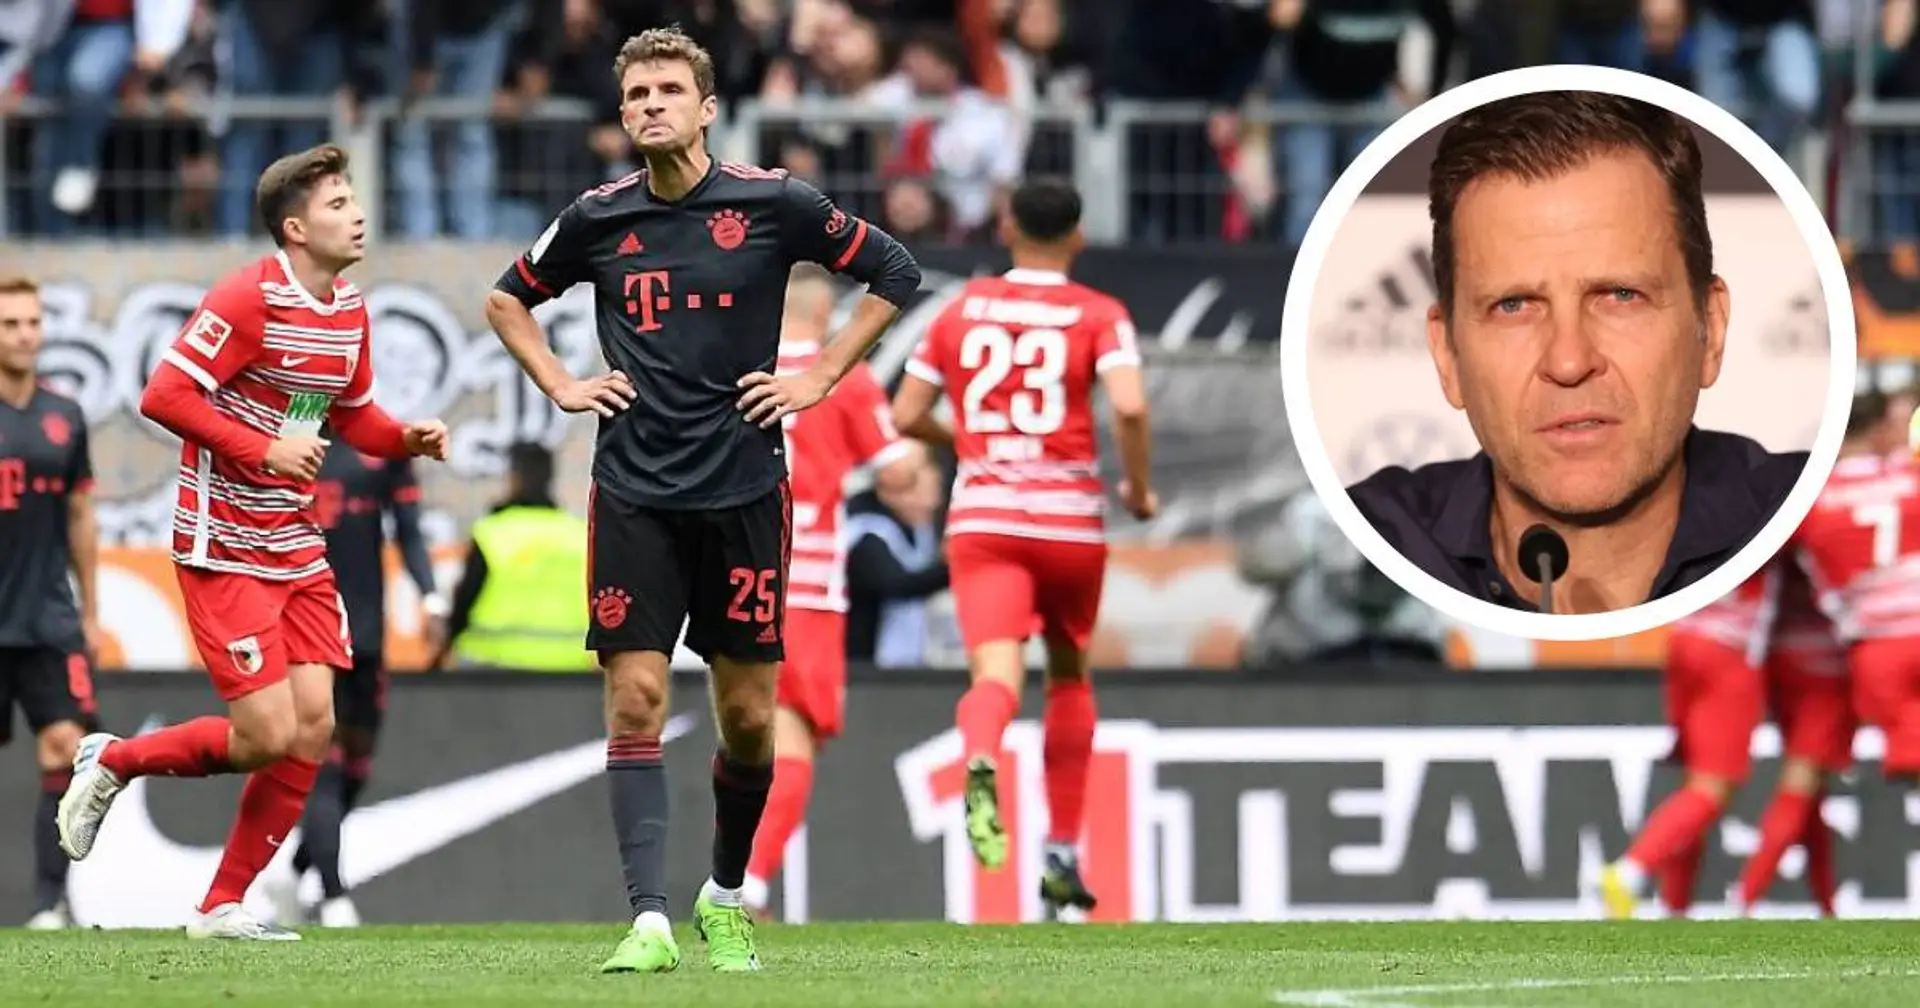 Bierhoff über Bayern: "Hatte nicht den Eindruck, dass da eine Mannschaft ist, die auseinanderfällt"